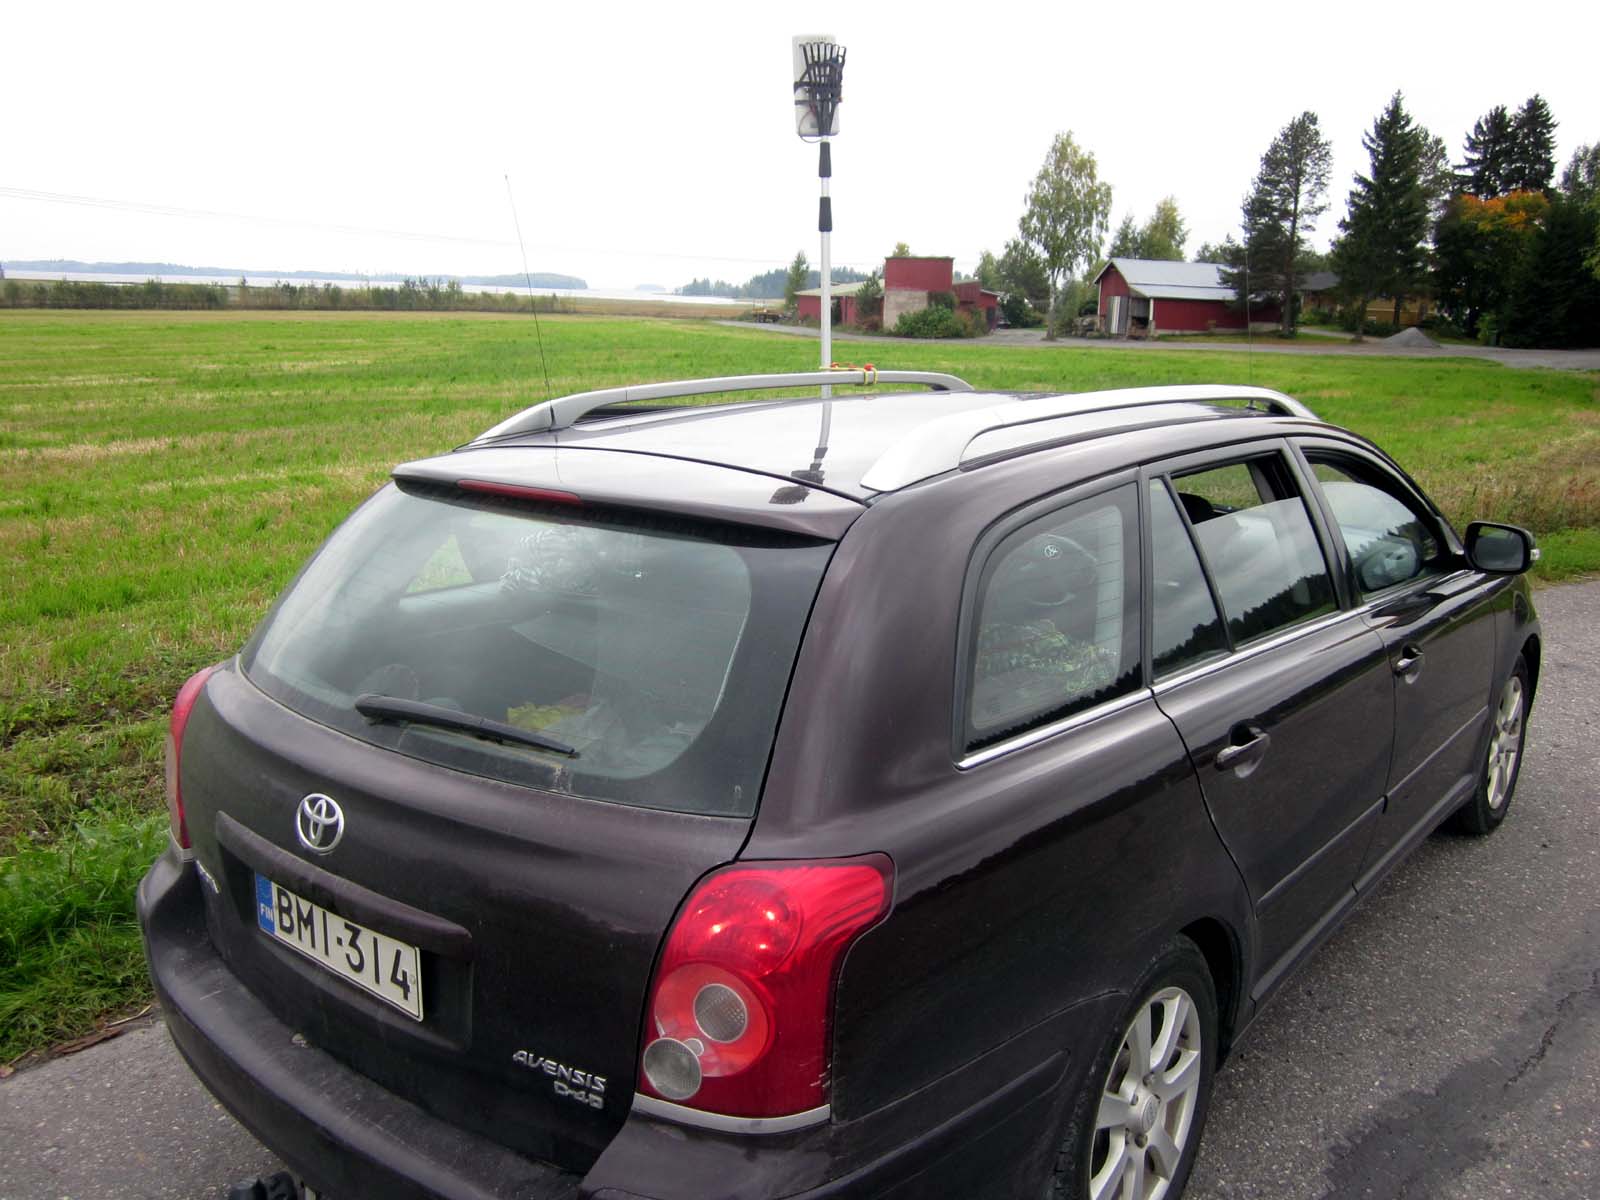 IMG_0591 Reititin TP-Link kattoharavaan kiinnitettynä Varkaudentiellä josta näköyhteys Heposelän yli Kinnulanniemeen.JPG